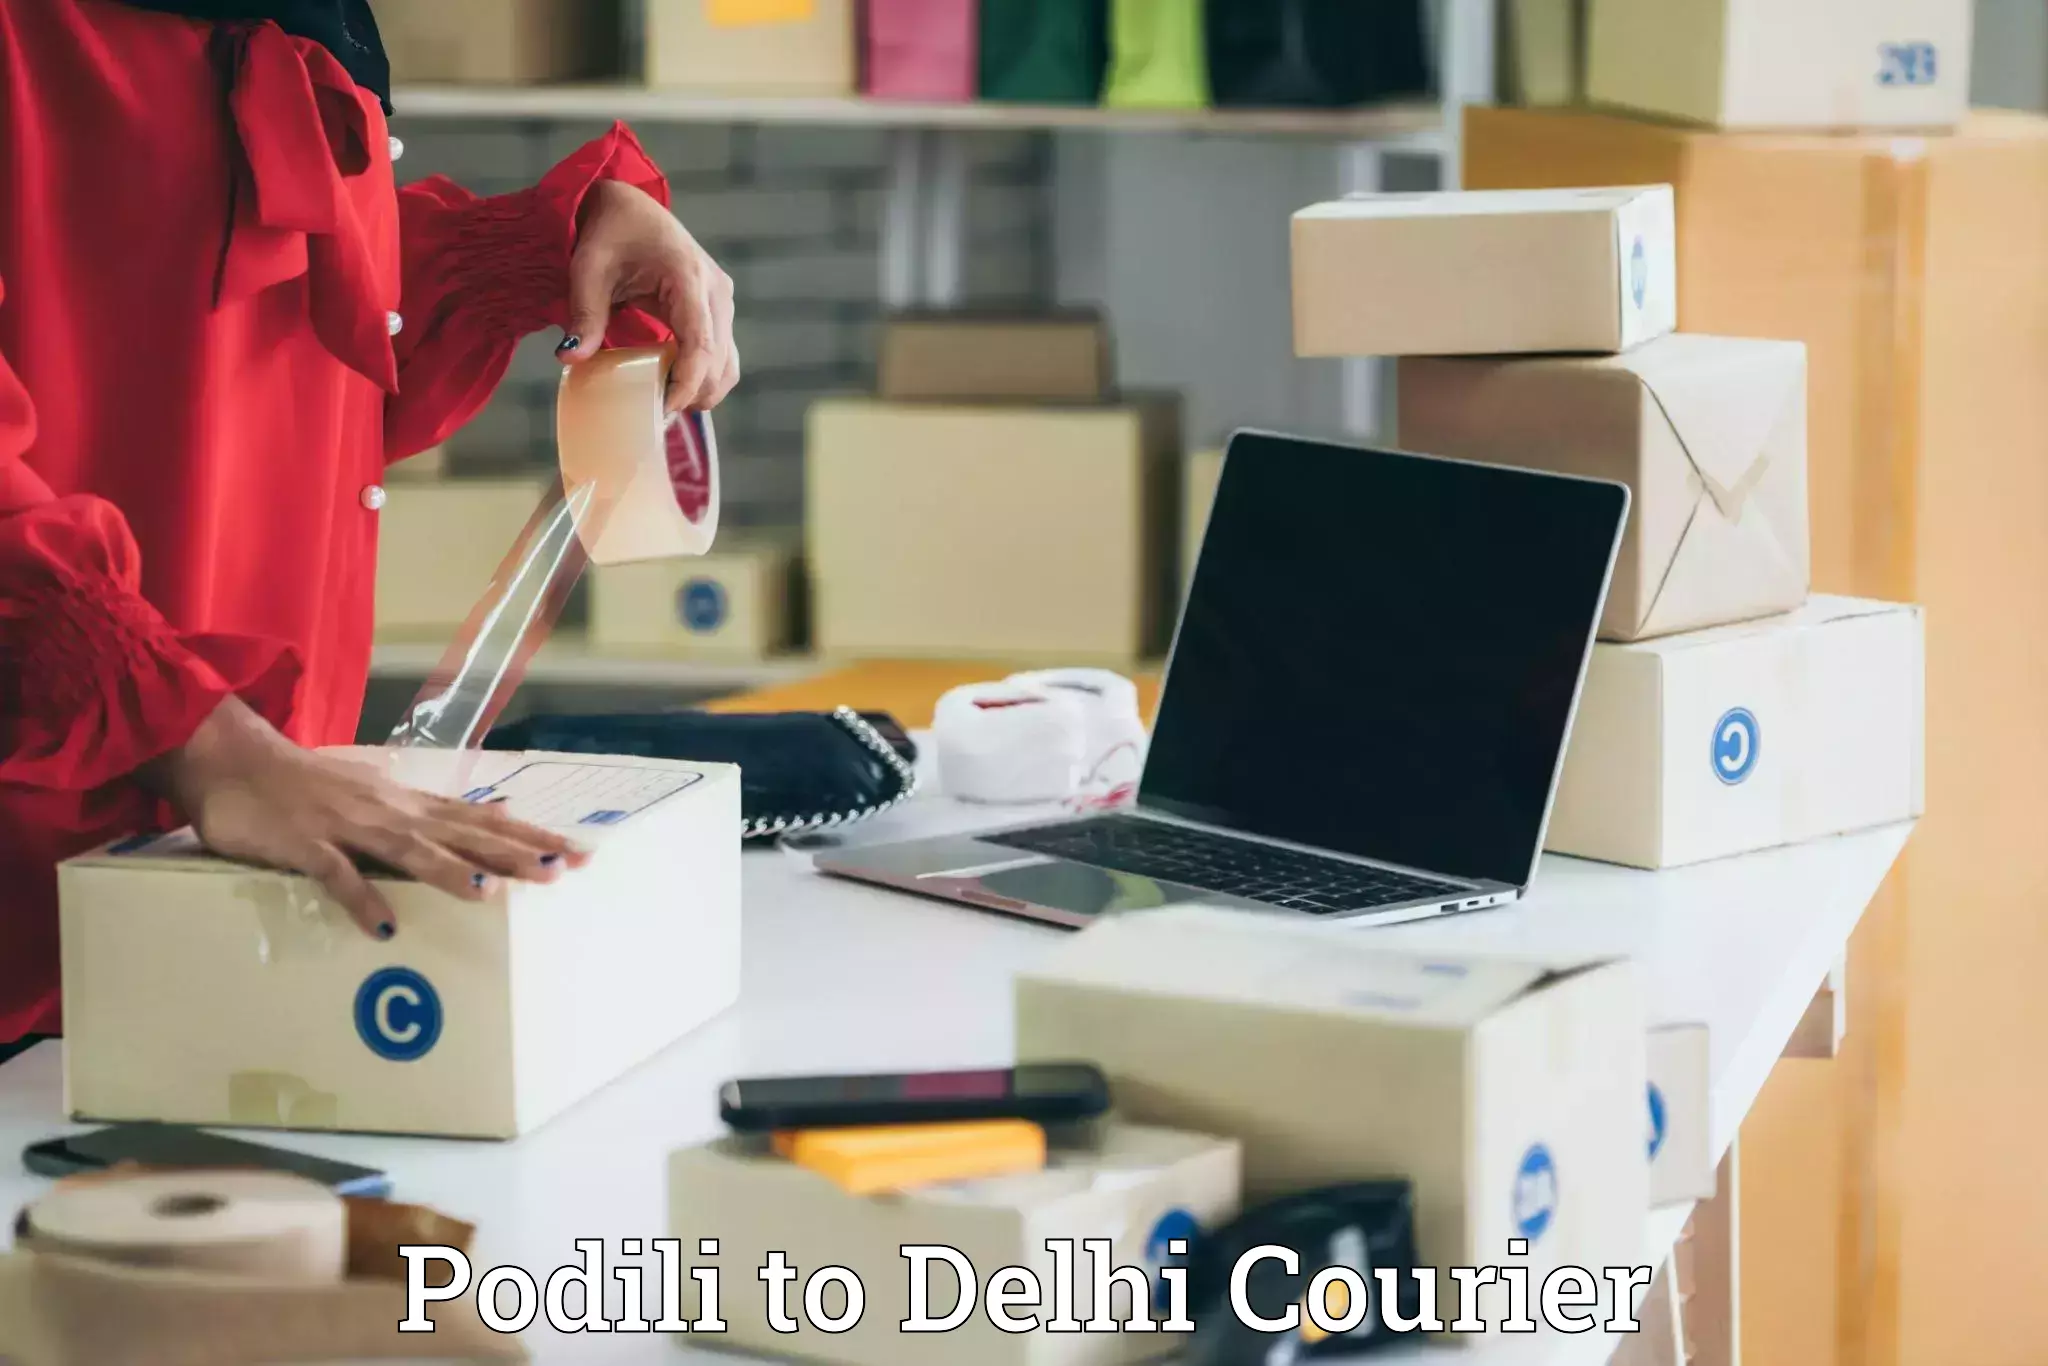 Luggage transfer service Podili to Delhi